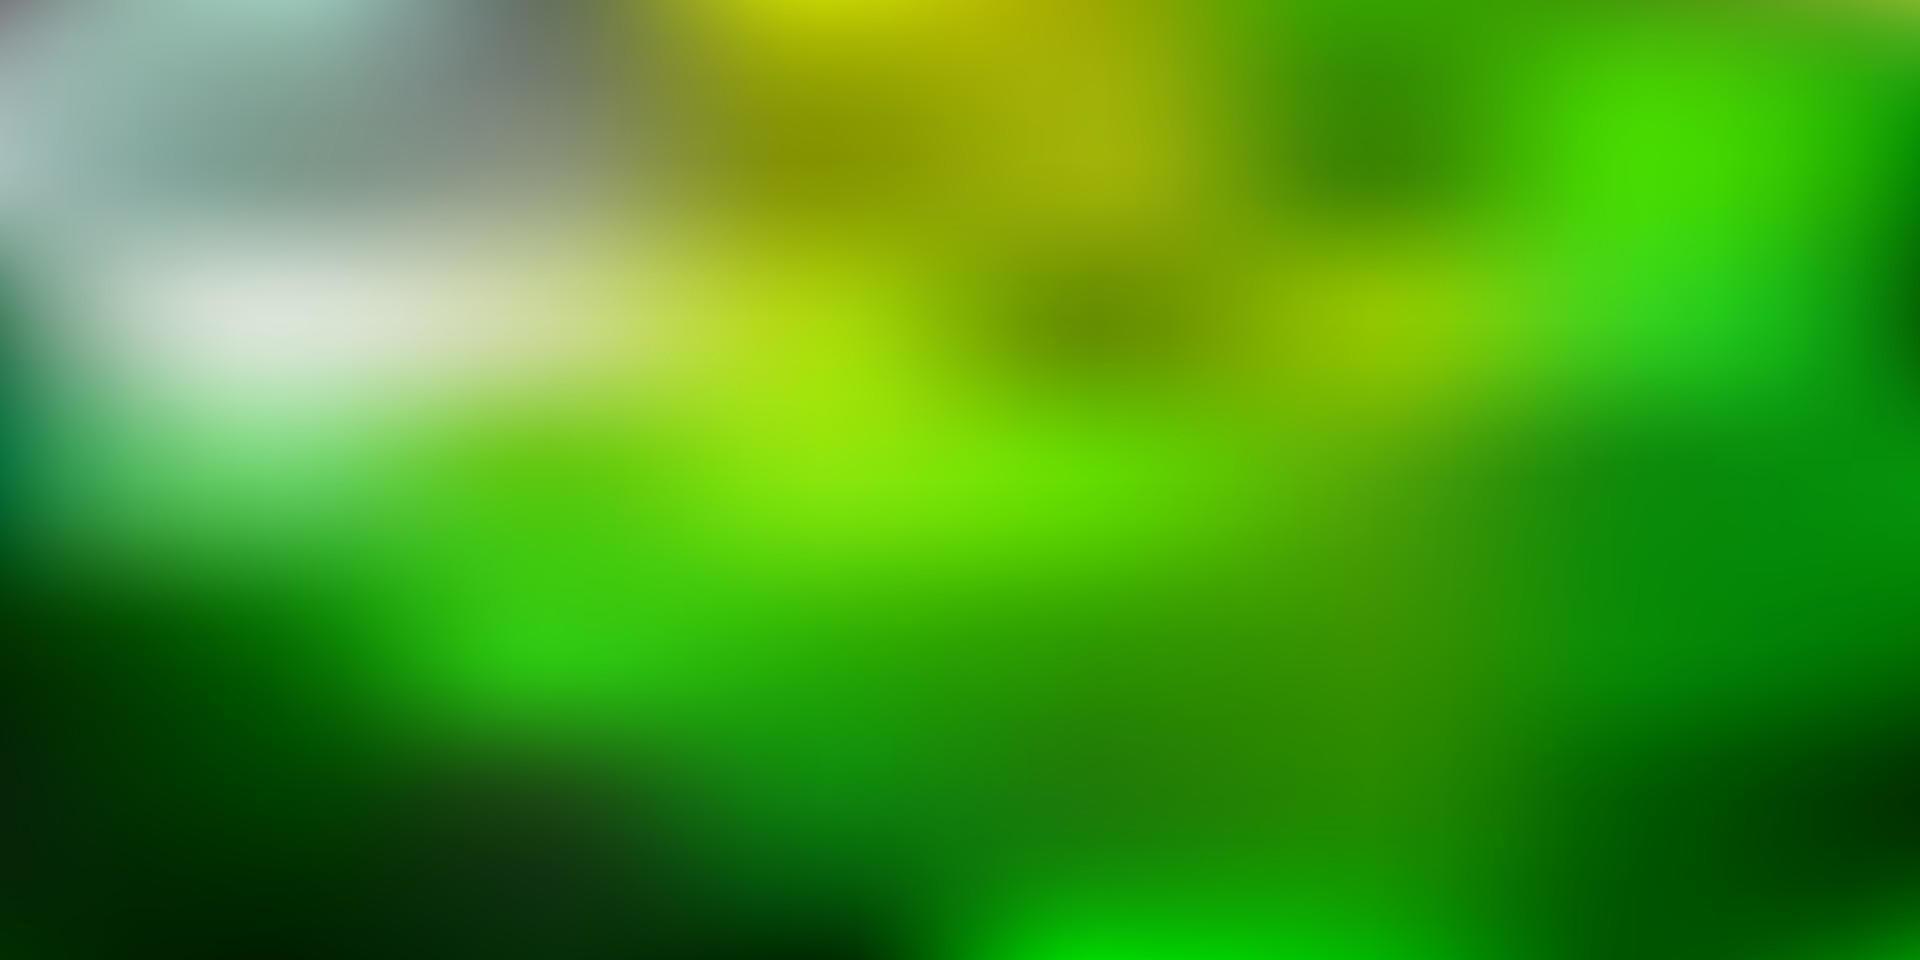 diseño de desenfoque degradado vector verde claro, amarillo.